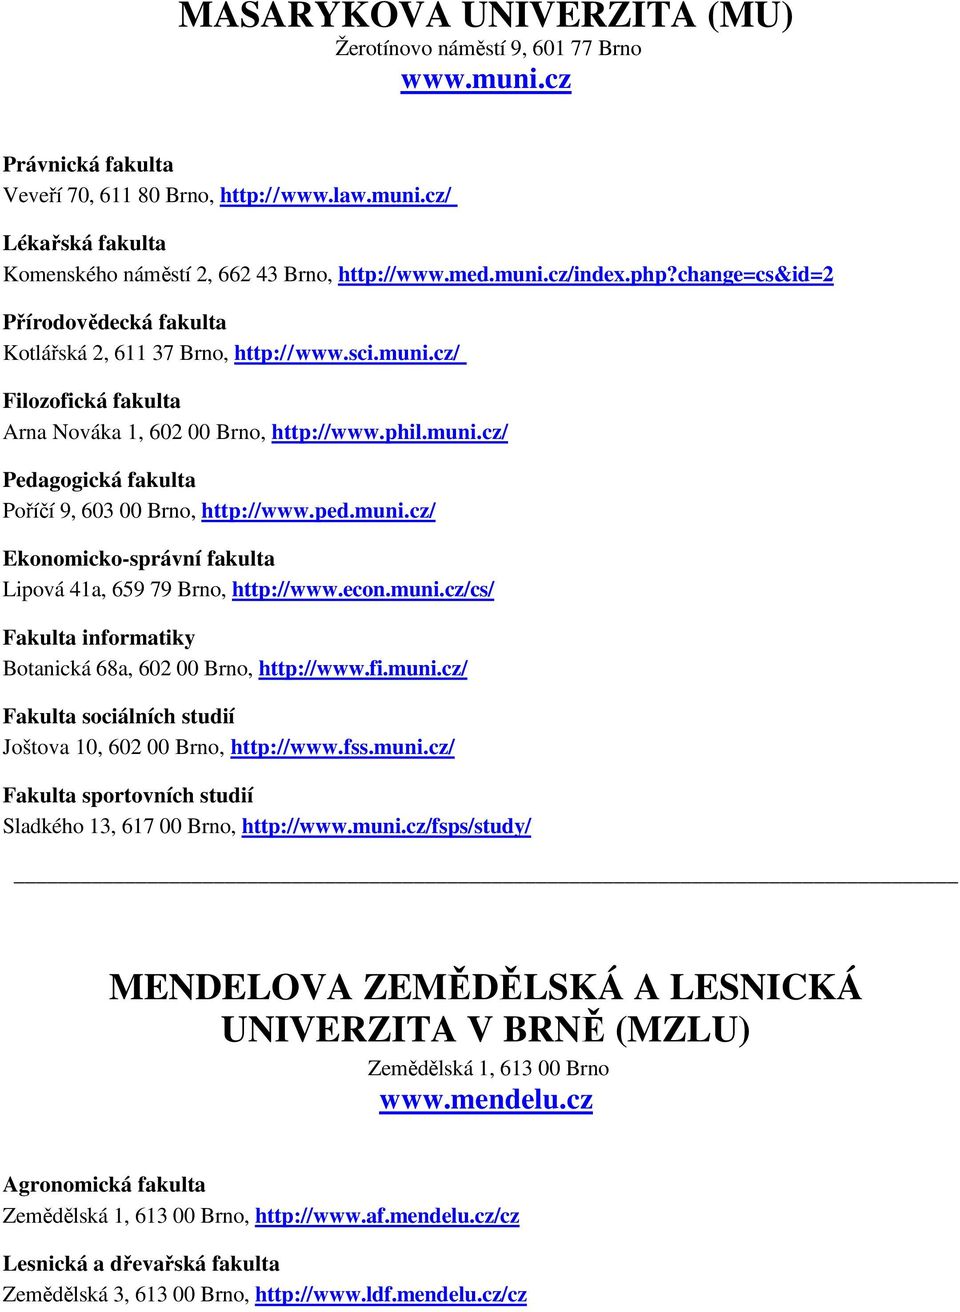 ped.muni.cz/ Ekonomicko-správní fakulta Lipová 41a, 659 79 Brno, http://www.econ.muni.cz/cs/ Fakulta informatiky Botanická 68a, 602 00 Brno, http://www.fi.muni.cz/ Fakulta sociálních studií Joštova 10, 602 00 Brno, http://www.